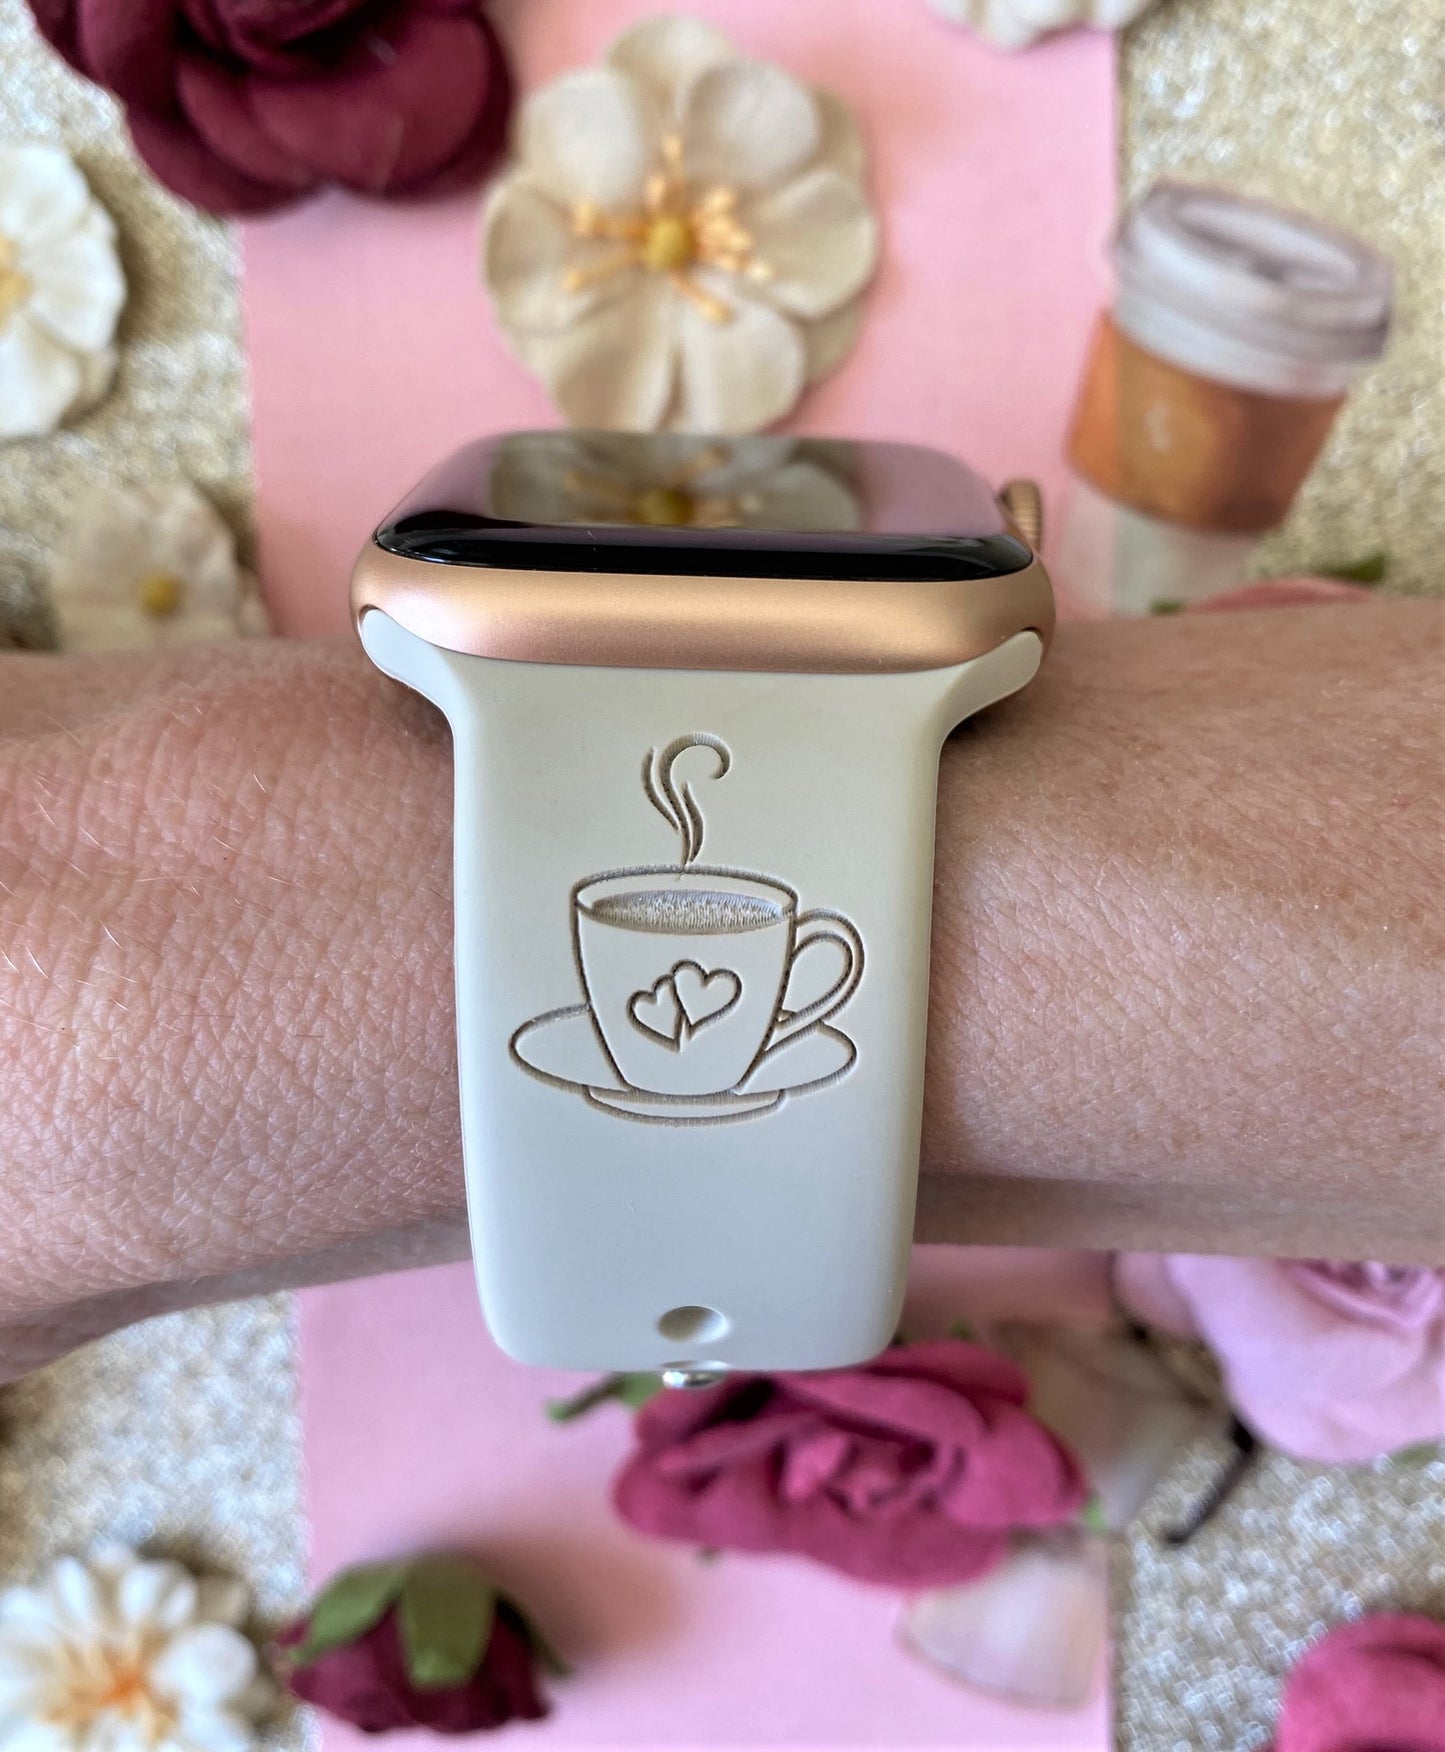 Coffee Love Apple Watch Band